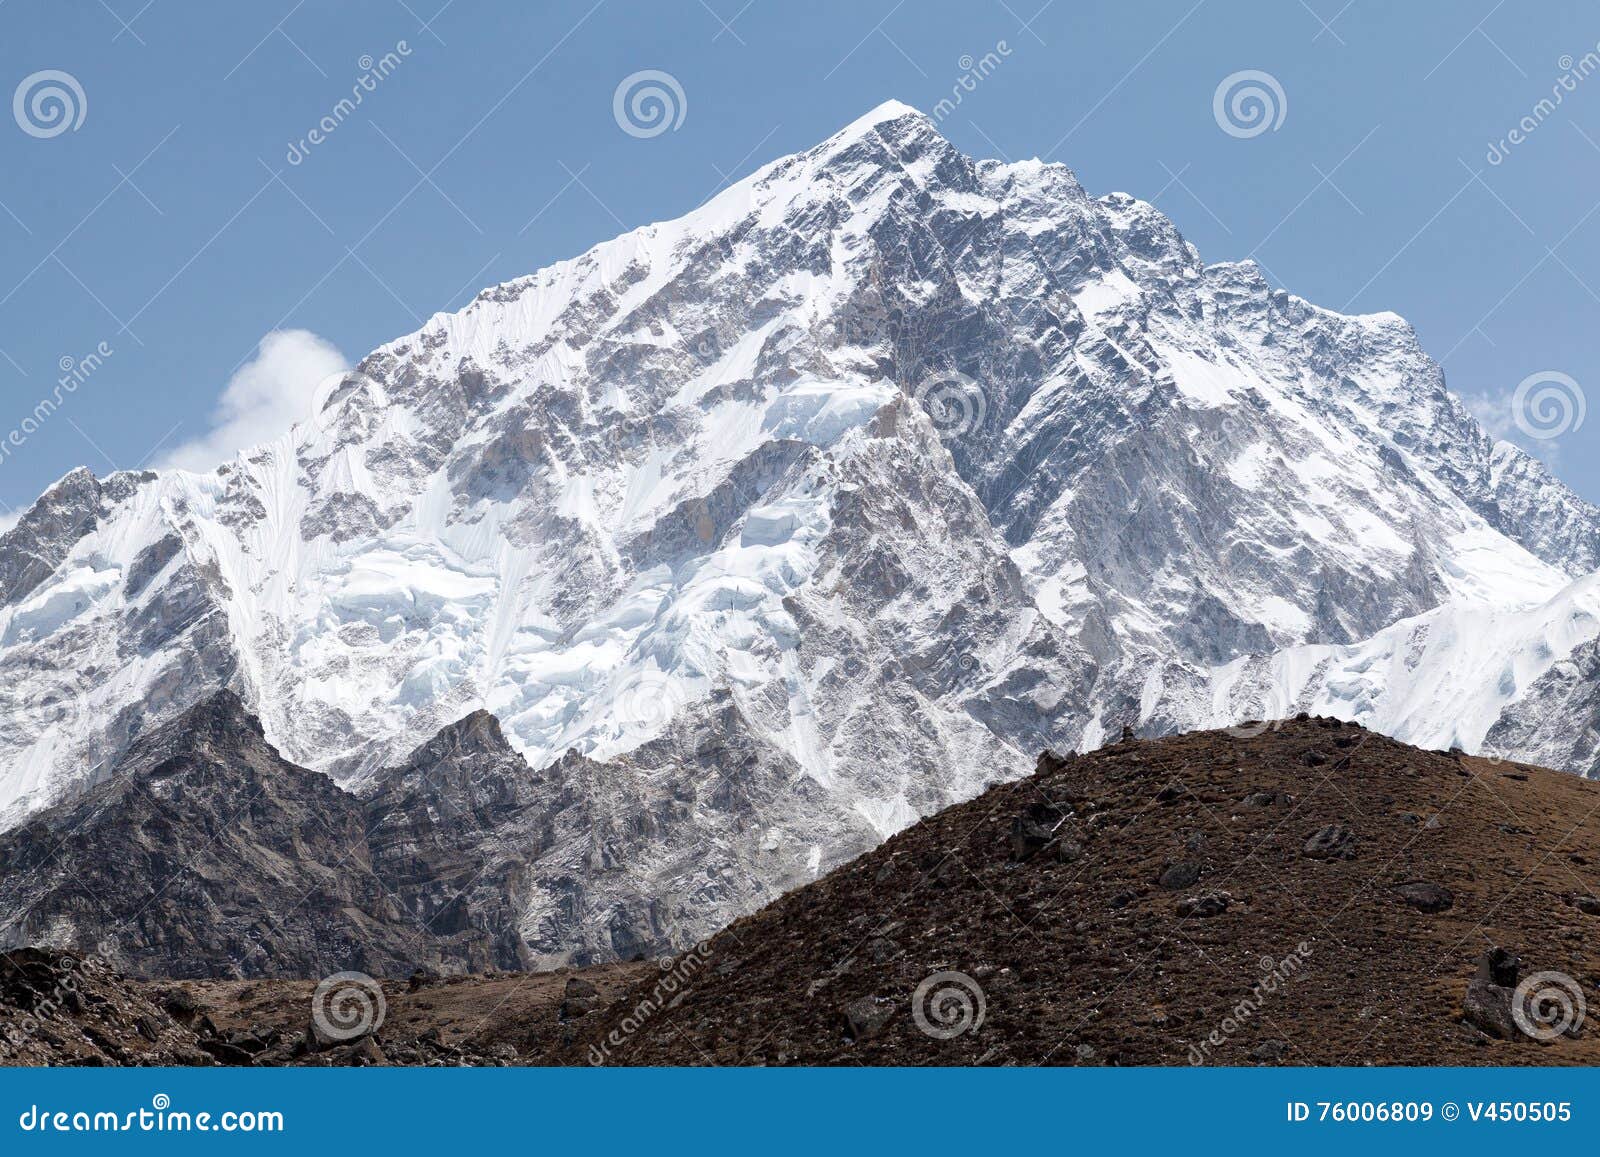 summit mt. nuptse, sagarmatha national park, solu khumbu, nepal